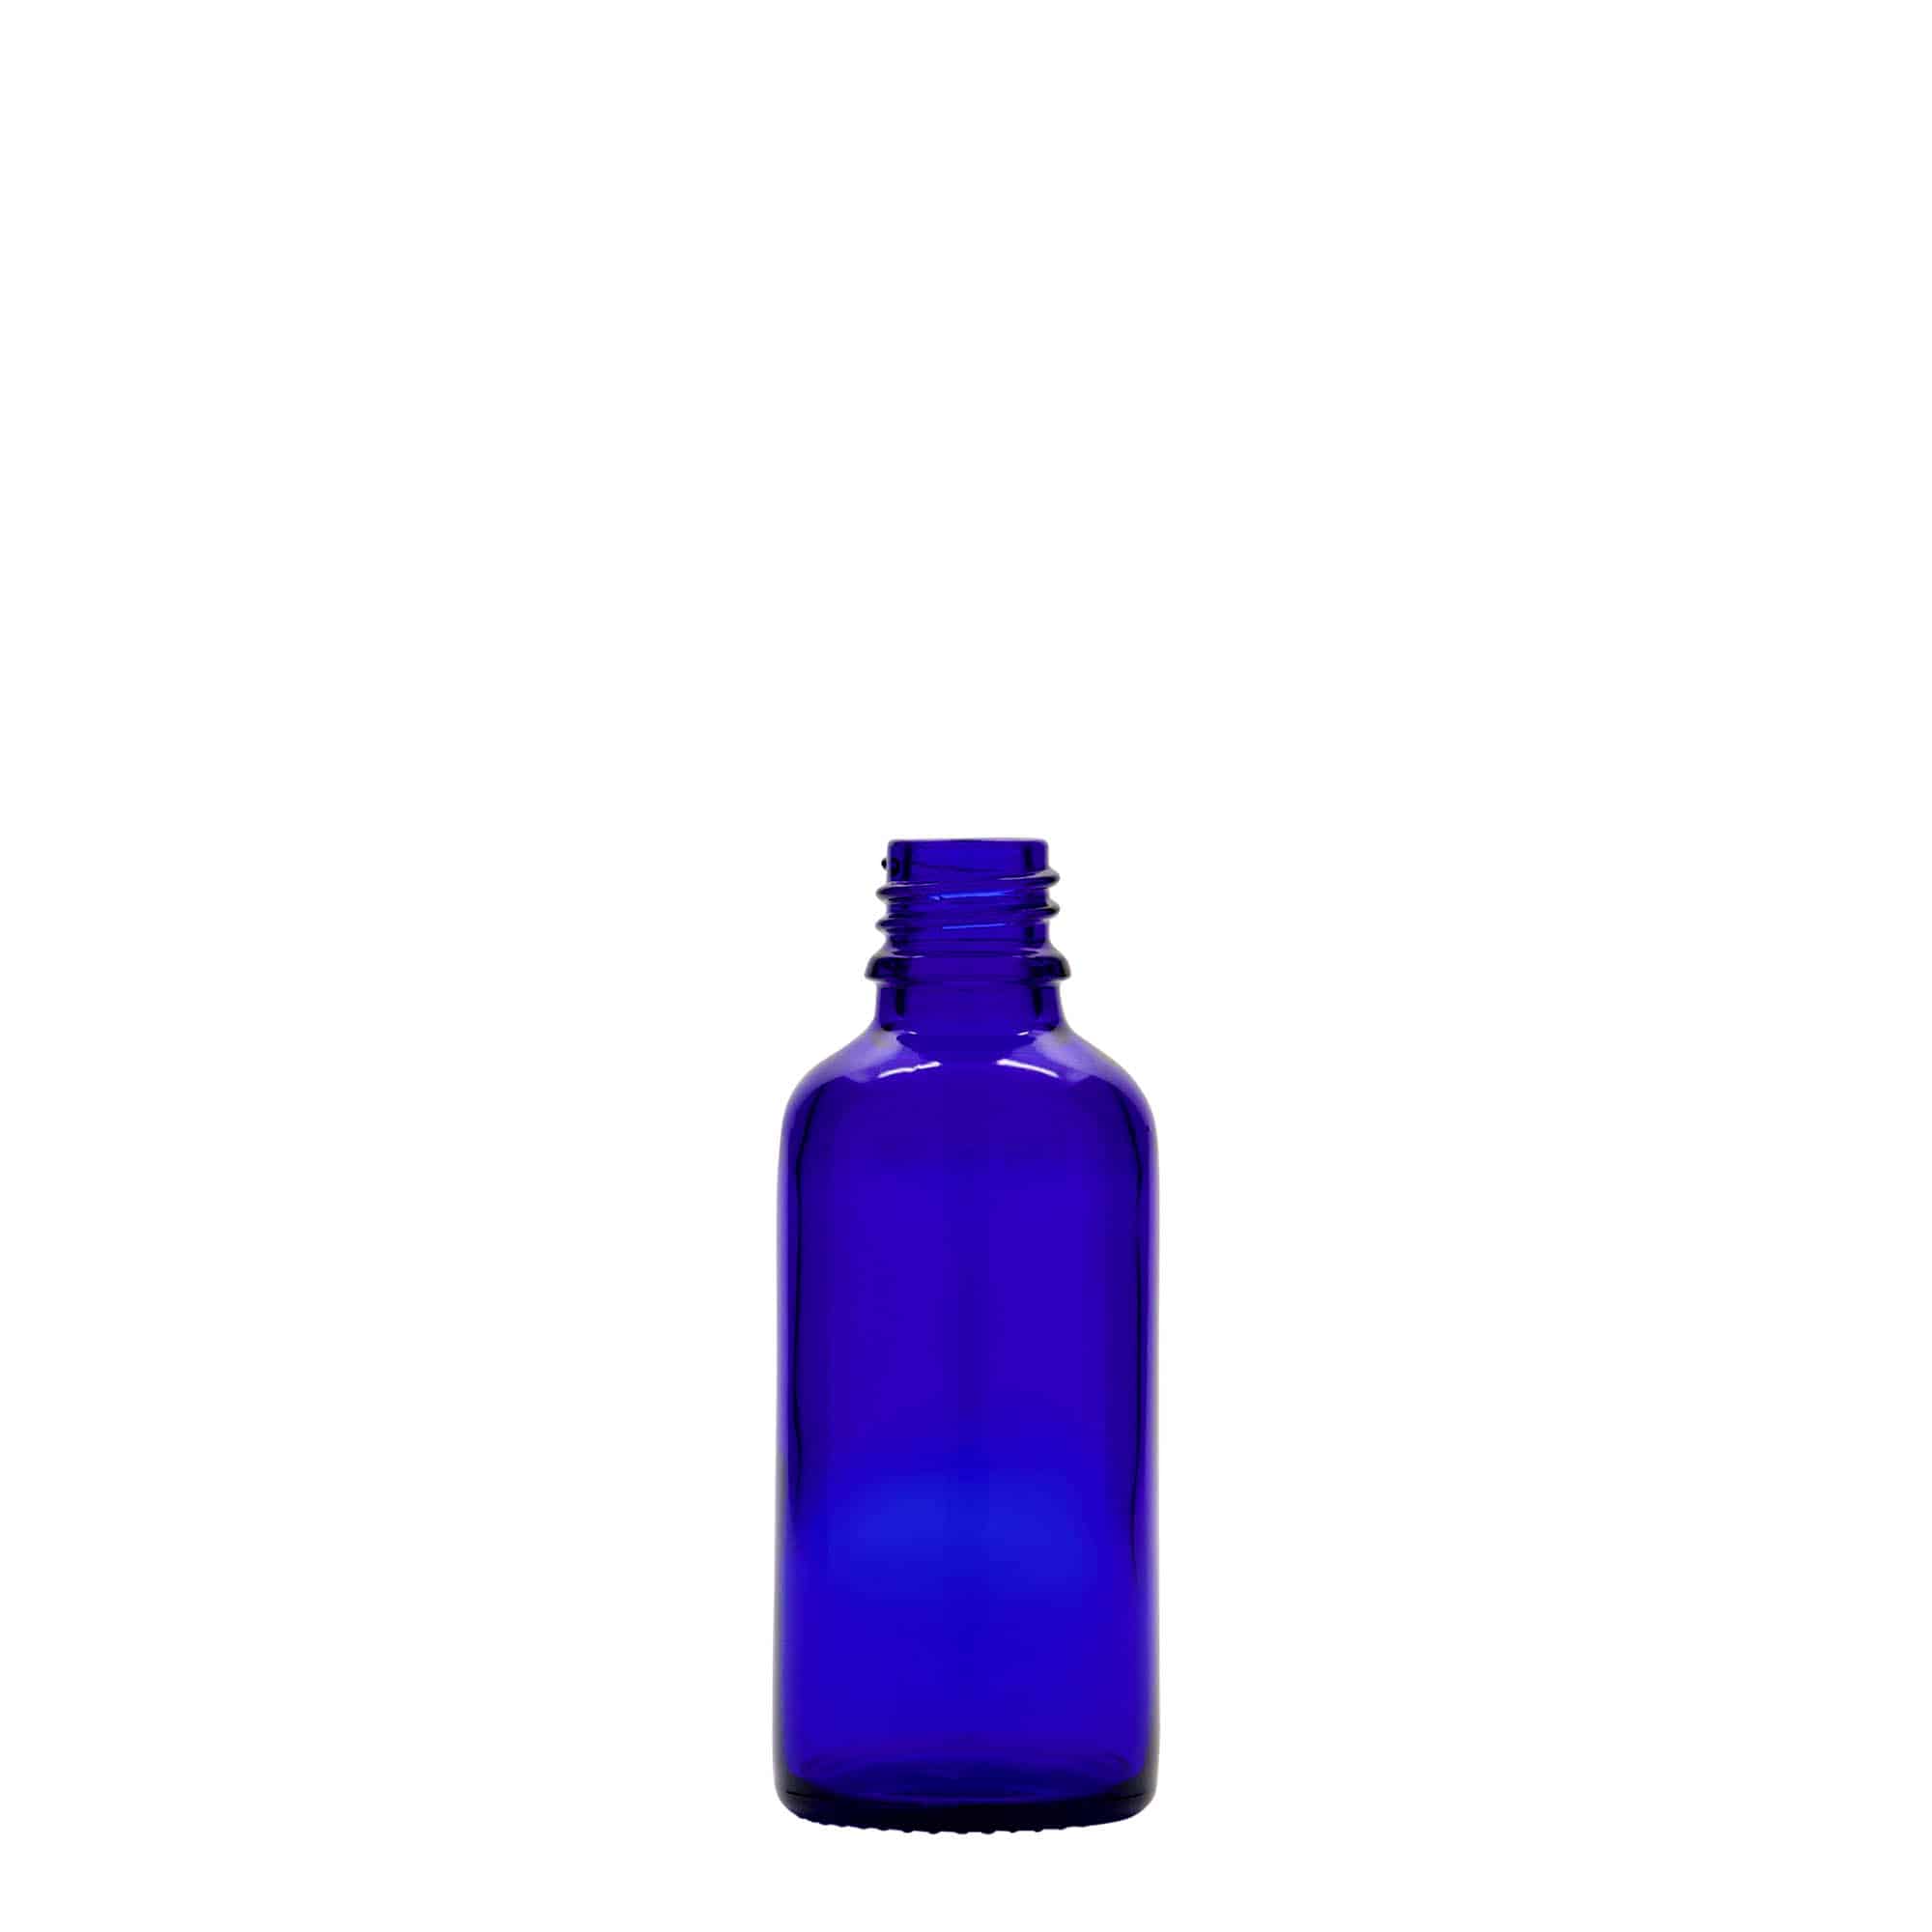 50 ml butelka farmaceutyczna, szkło, kolor błękit królewski, zamknięcie: DIN 18